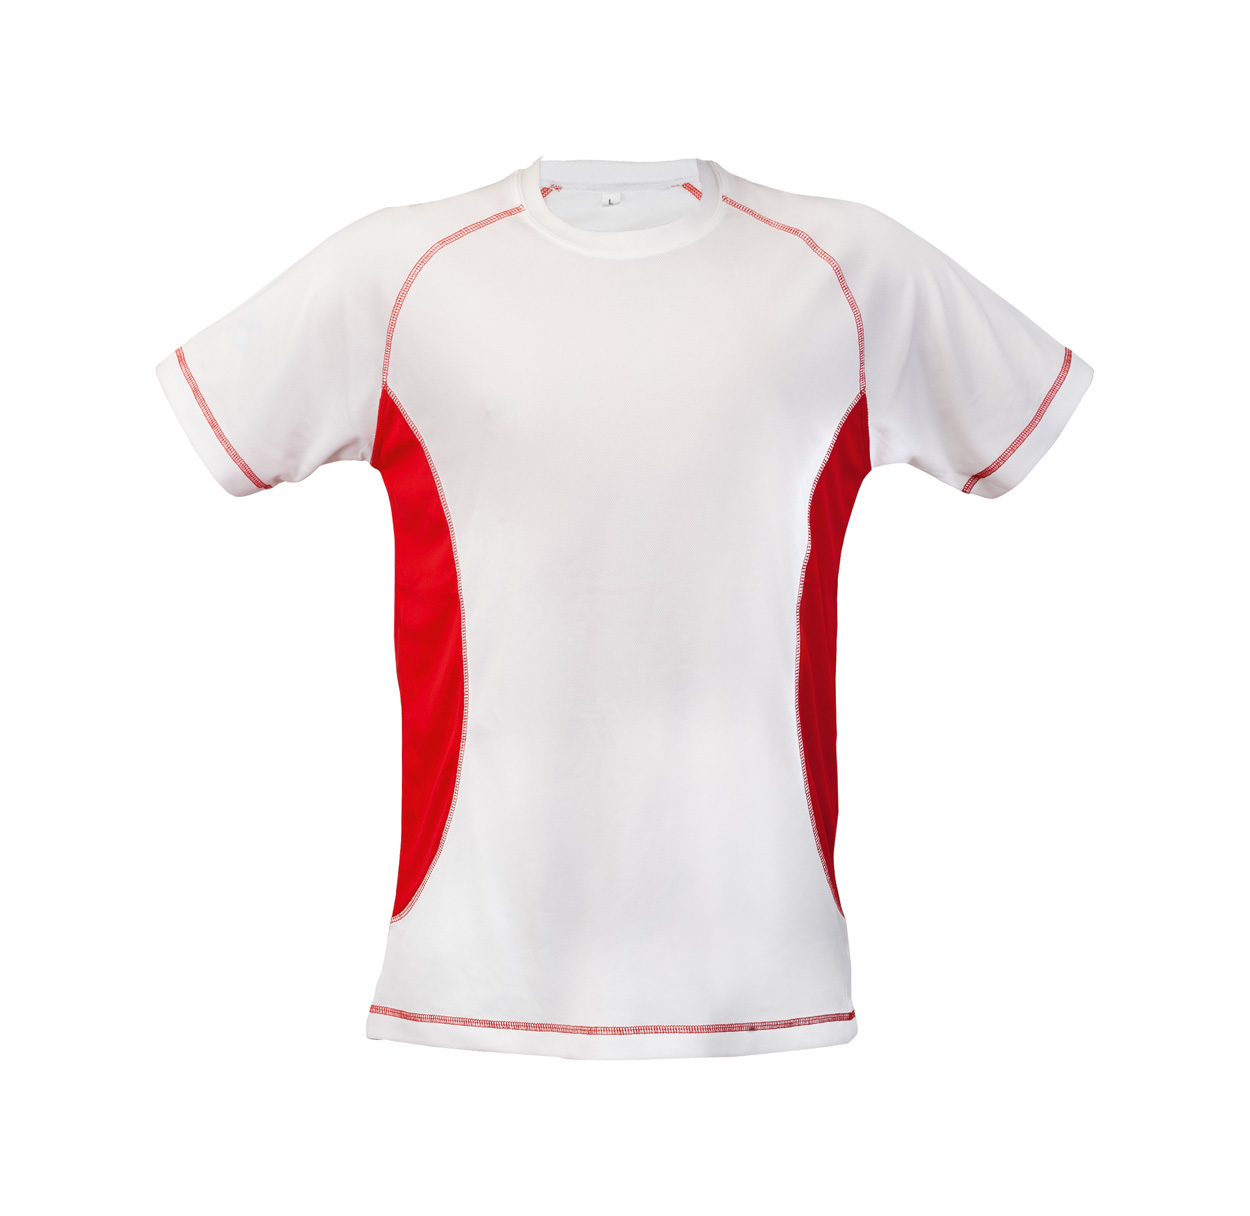 Футболки спортсмена. Футболка спортивная «Sport line Cross». G2 t-Shirt 2023. Футболка для спортсмена. Футболки командные спортивные.